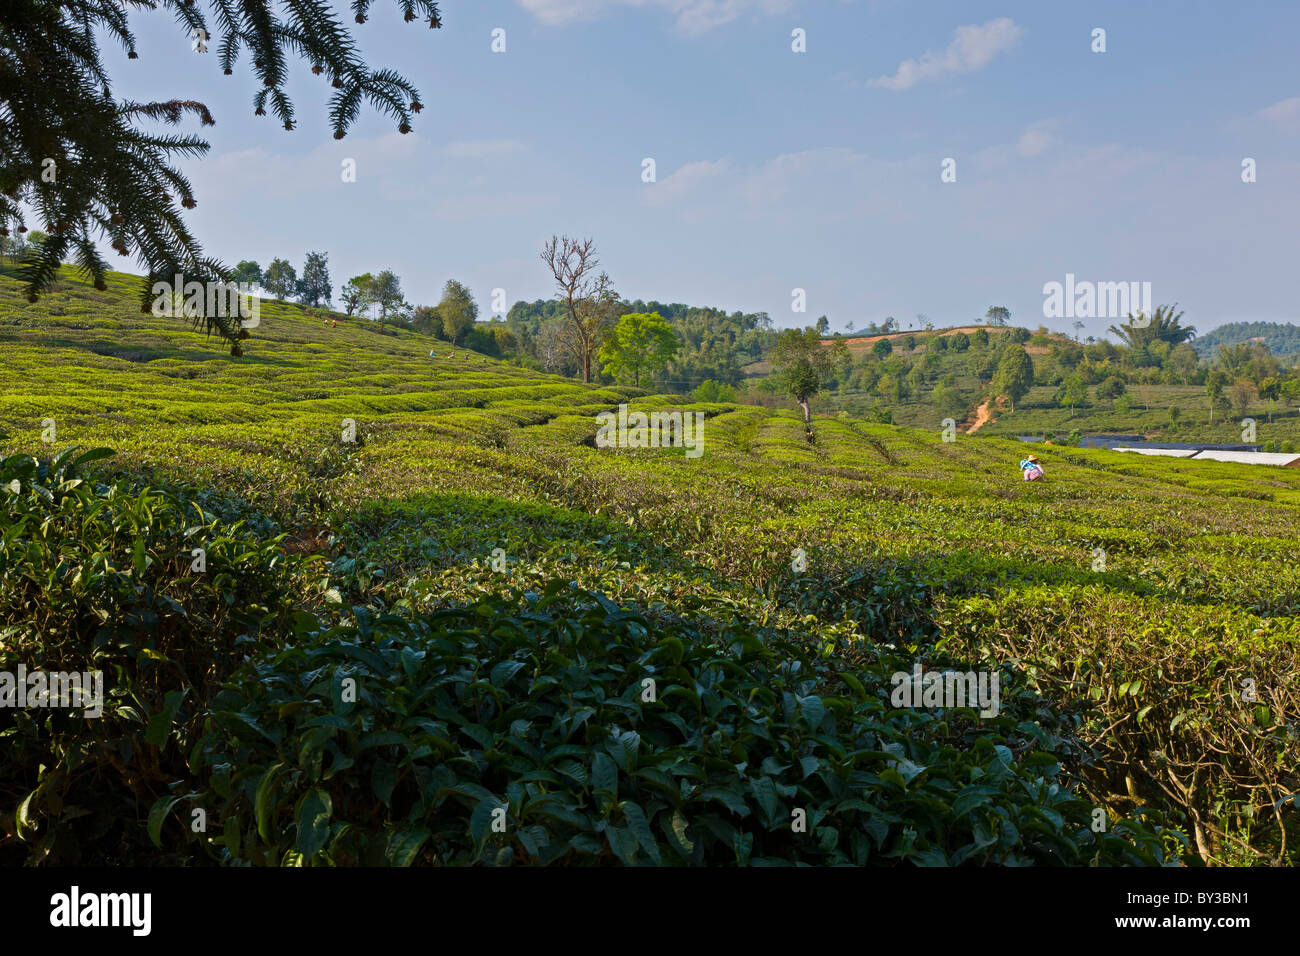 La piantagione di tè, tè Research Institute, nella provincia dello Yunnan, Xishuangbanna, Cina. JMH4220 Foto Stock